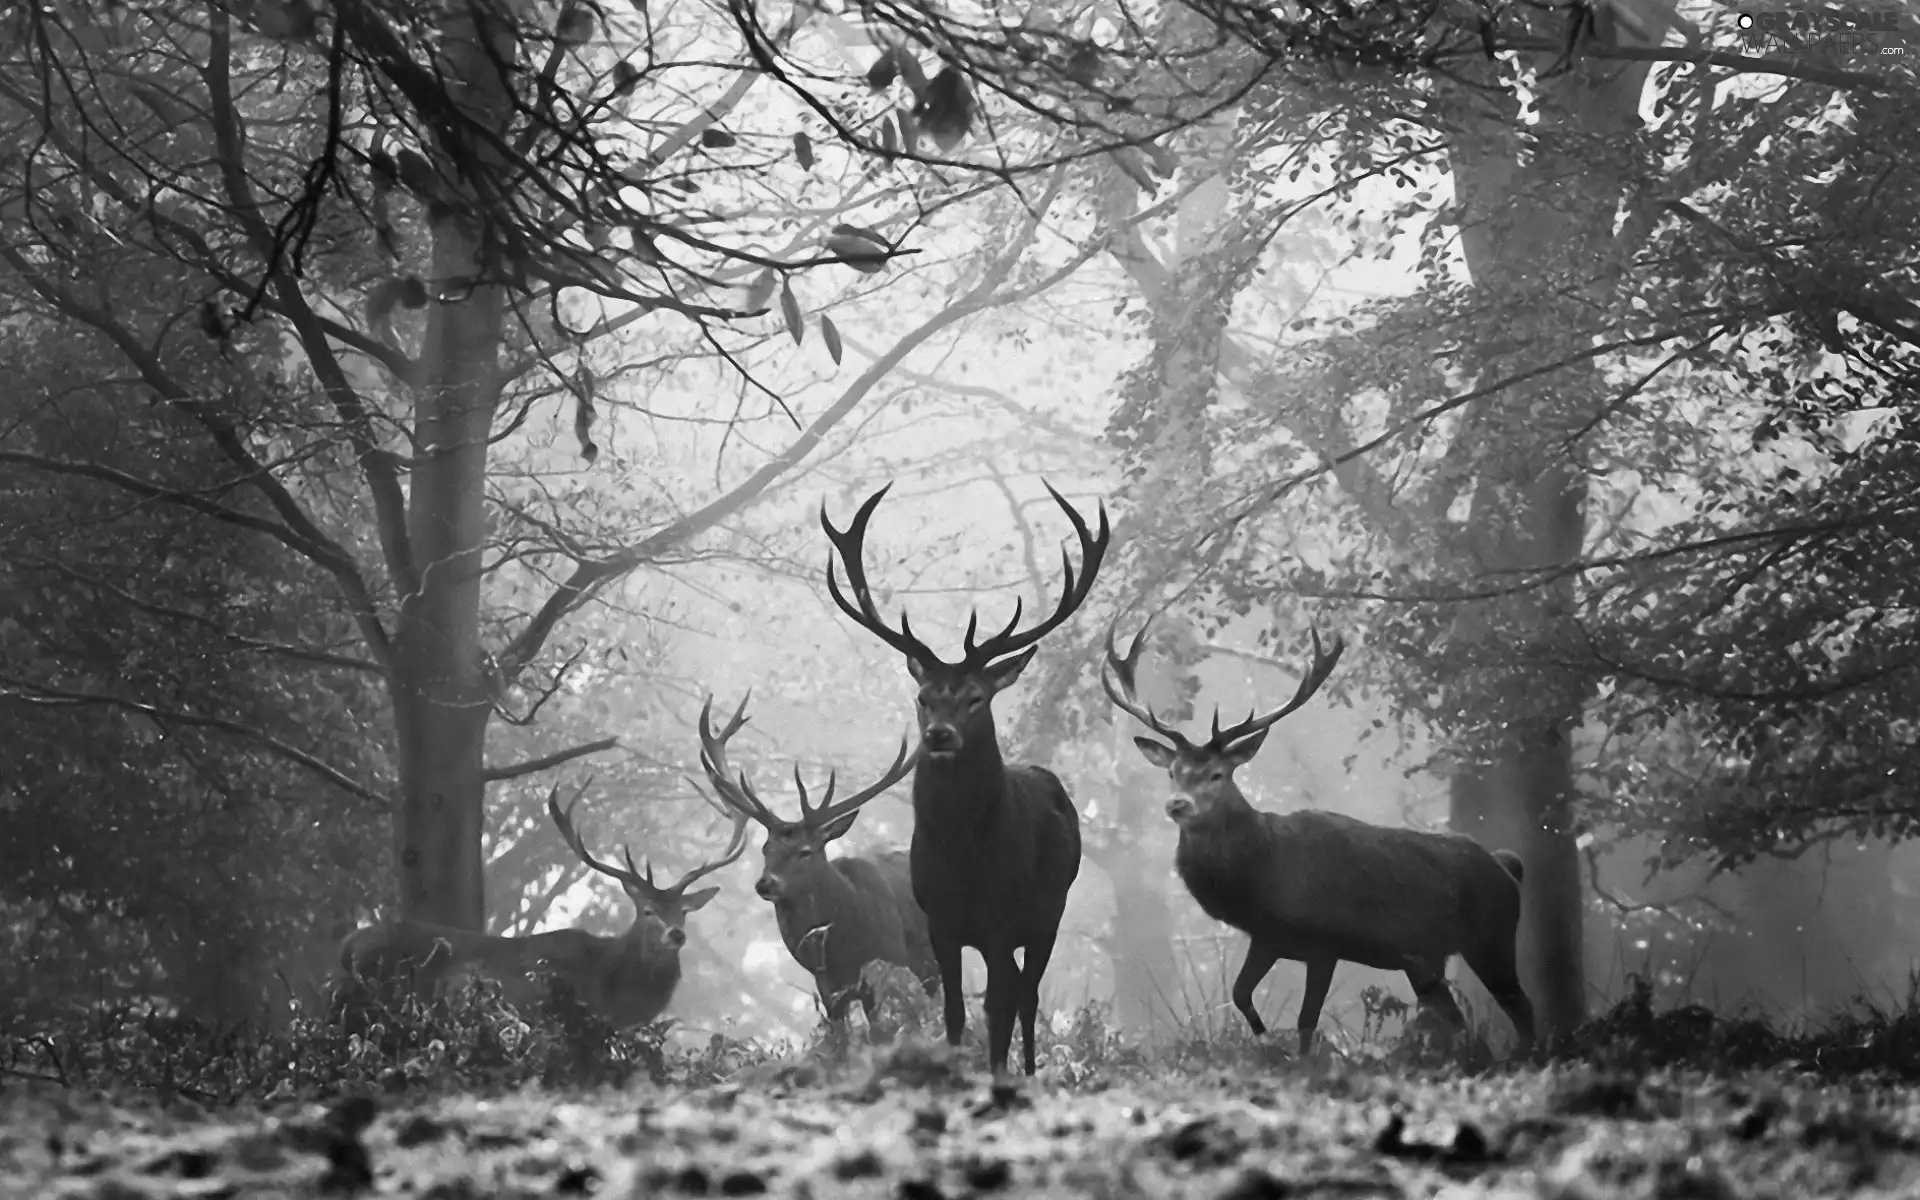 Deer, forest, Art Image, autumn